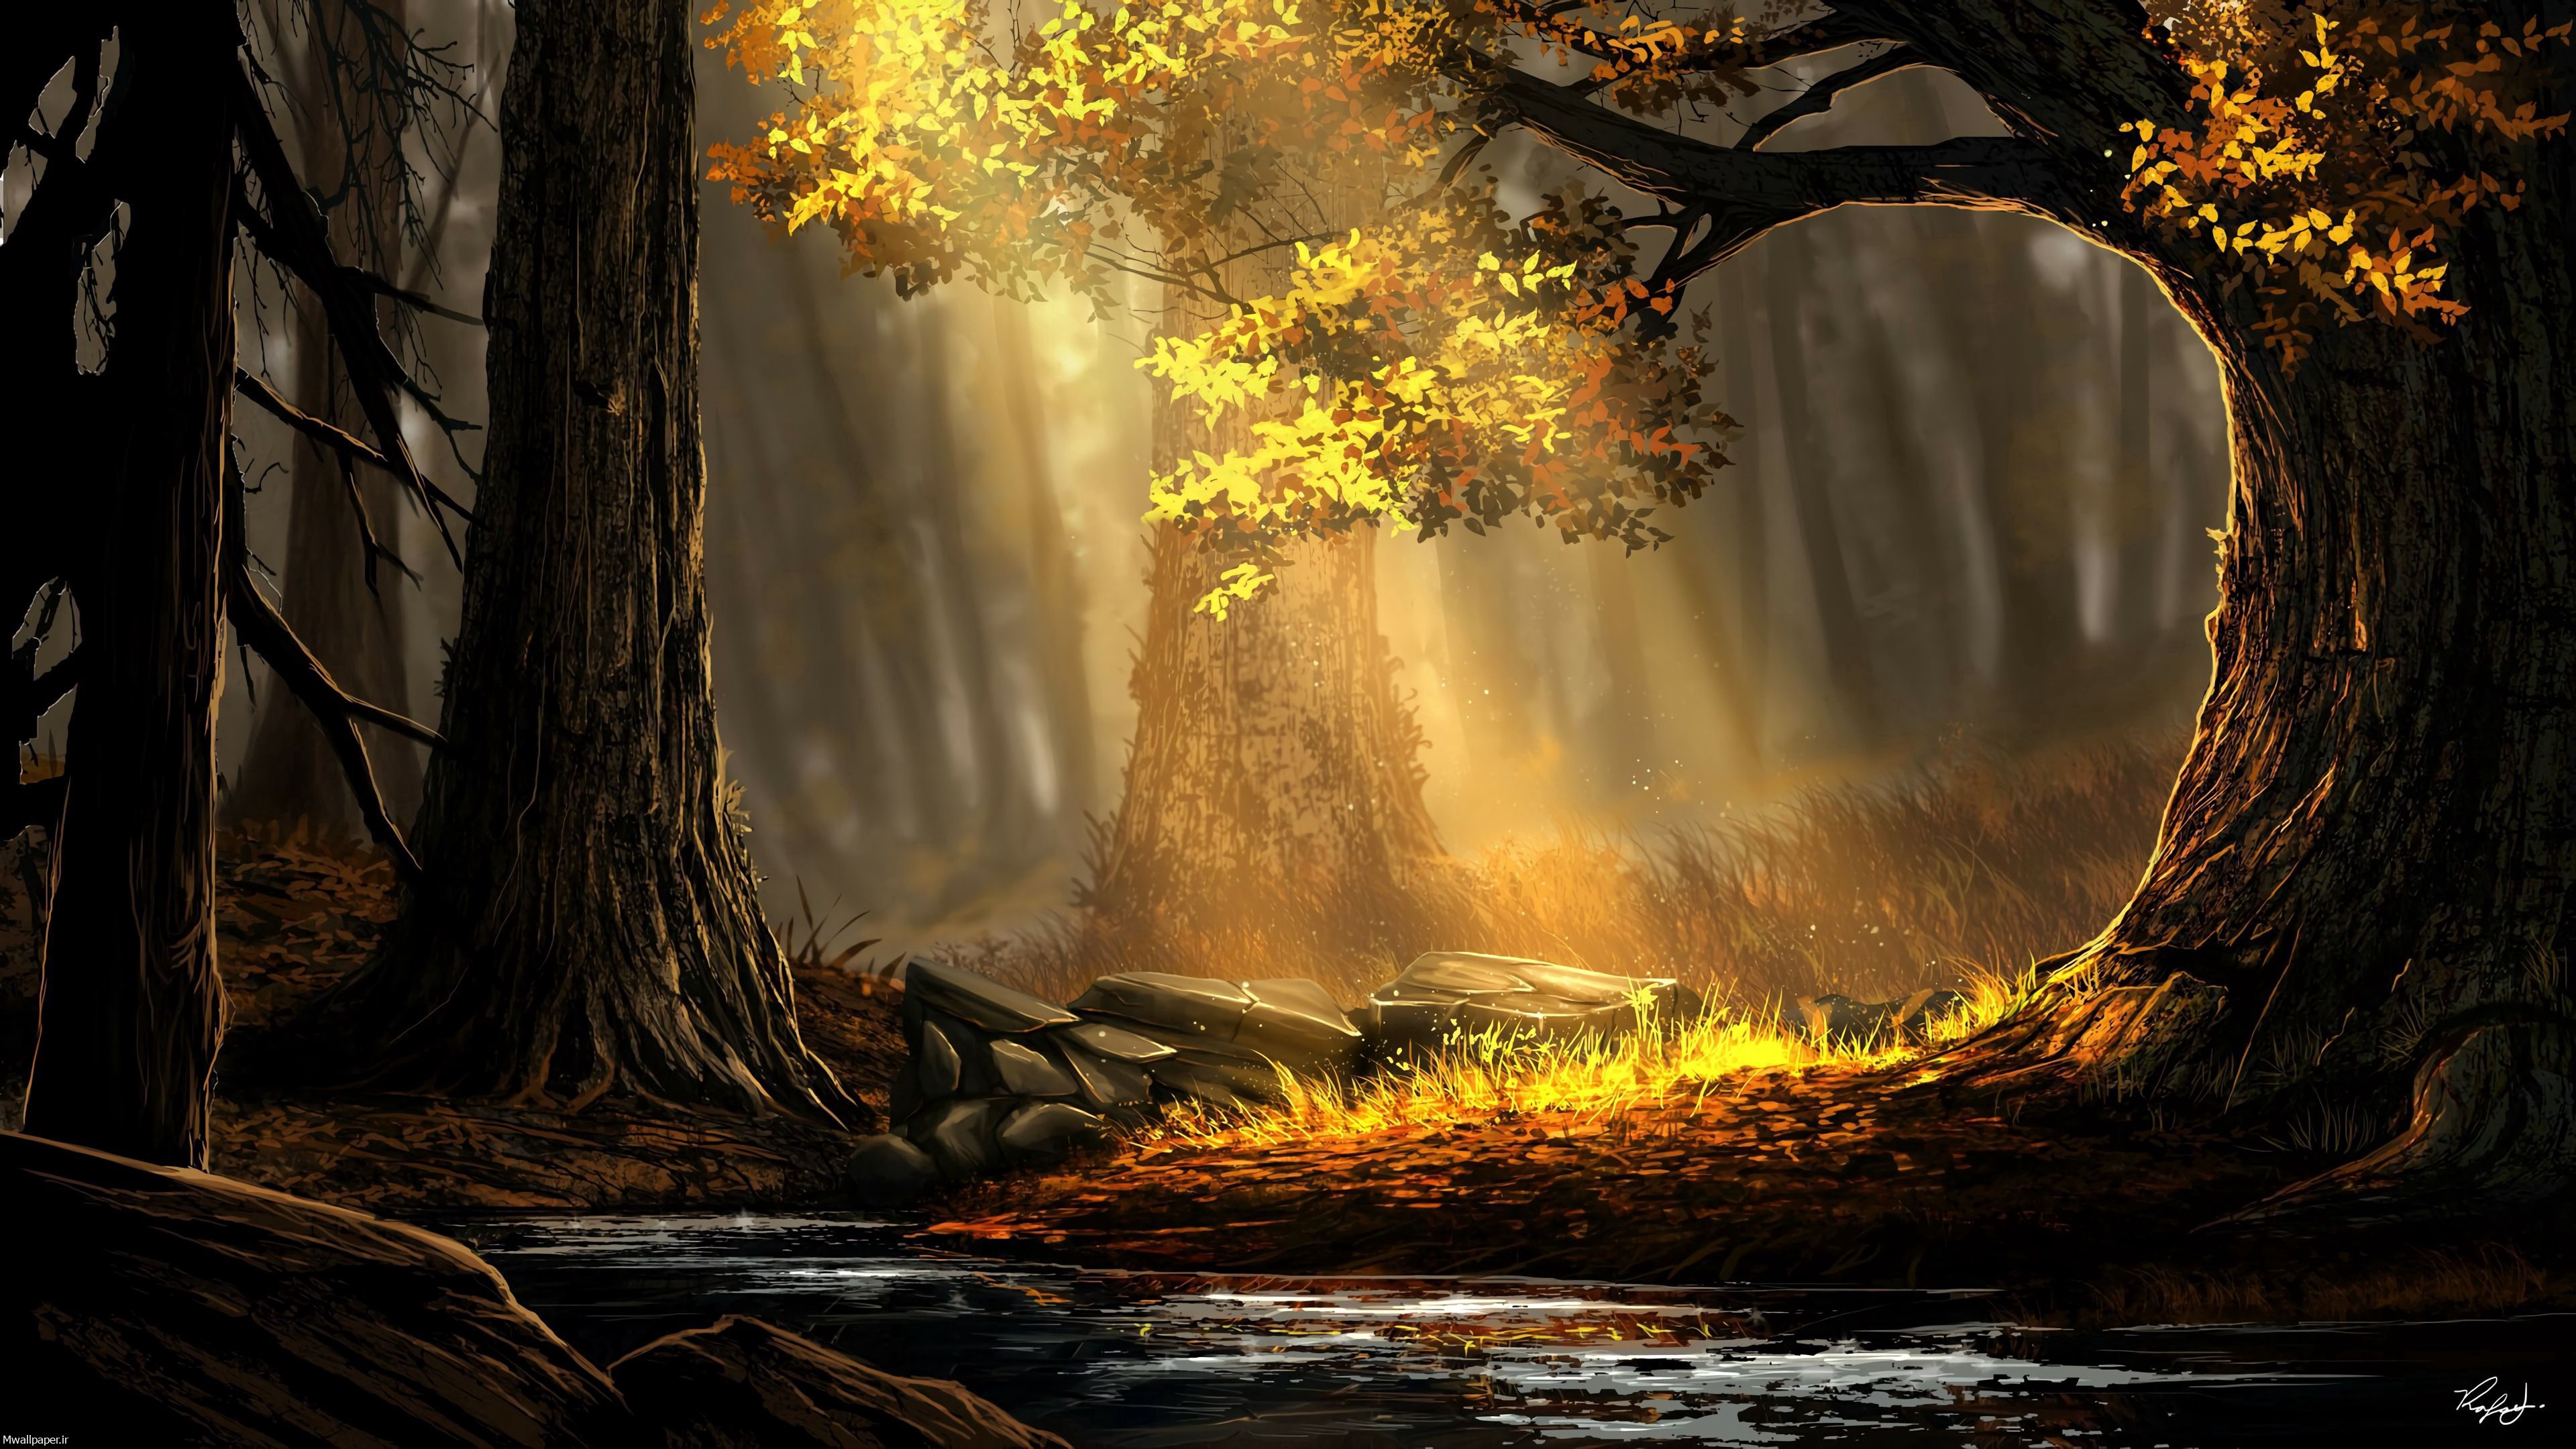 نقاشی با کیفیت جنگل در پاییز